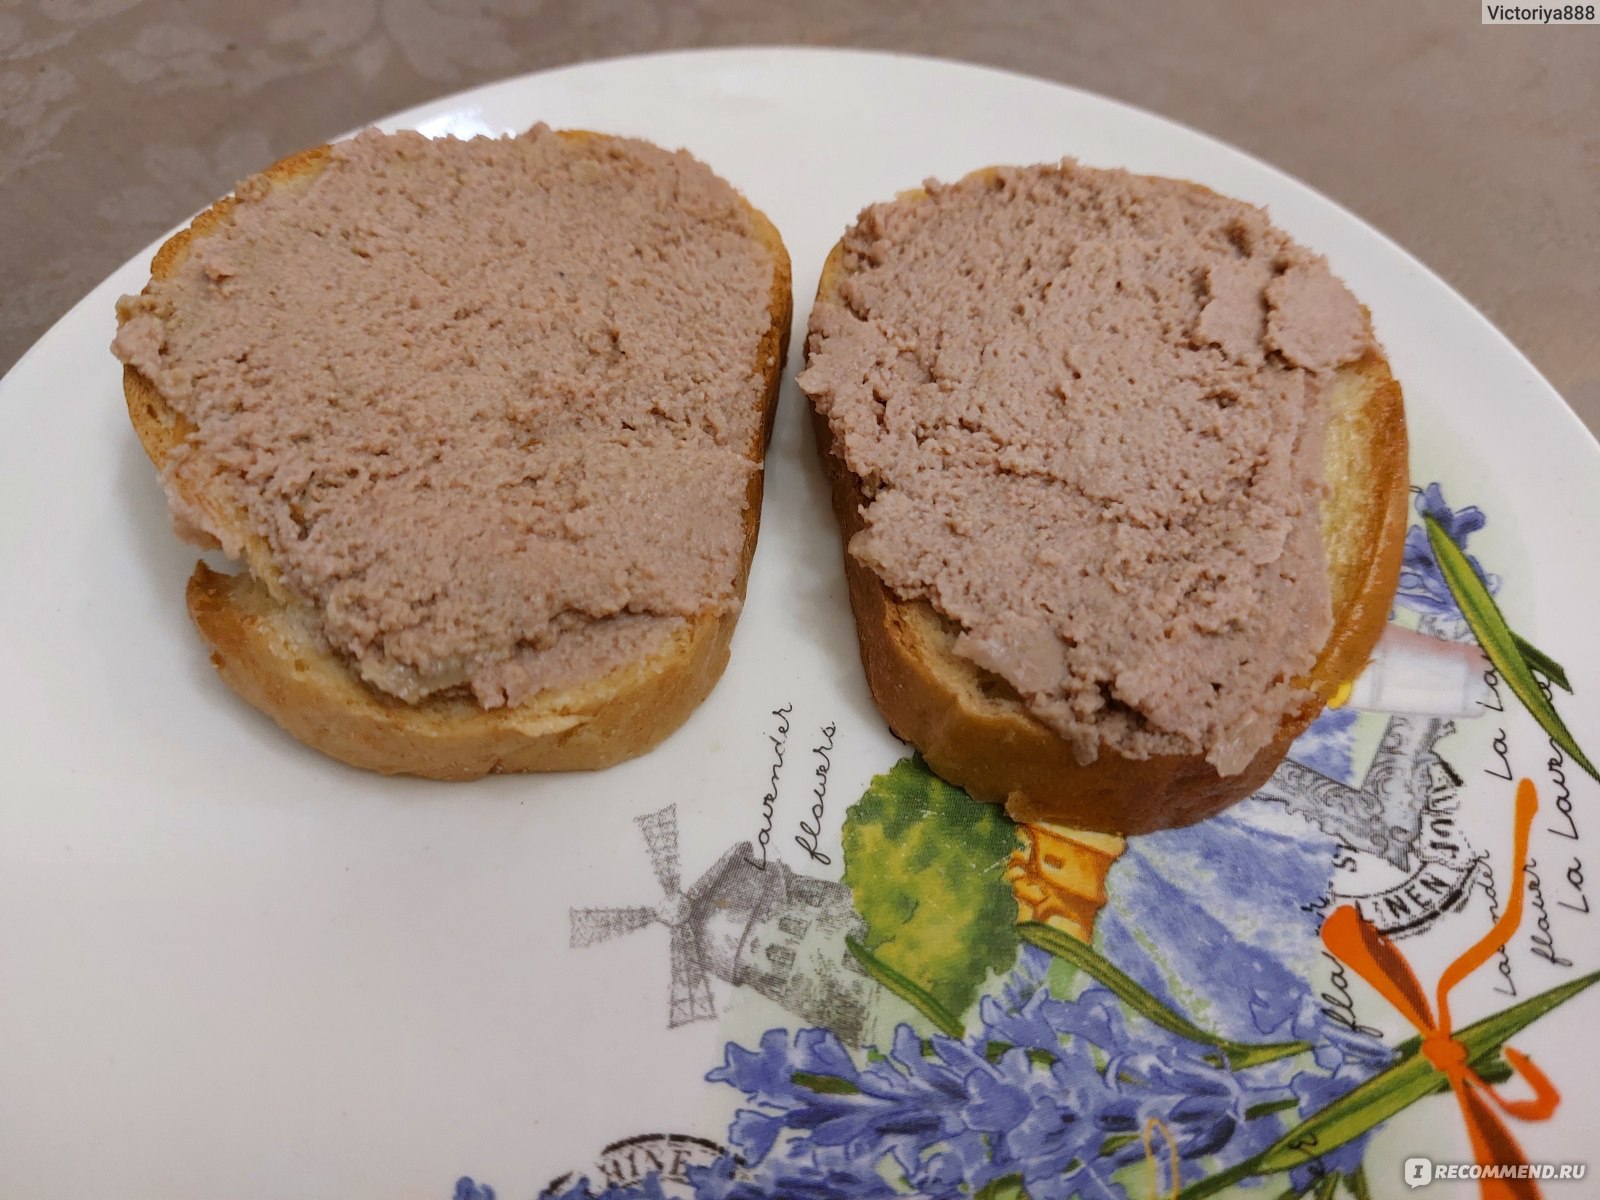 Бутерброды с печенью минтая - 7 пошаговых фото в рецепте